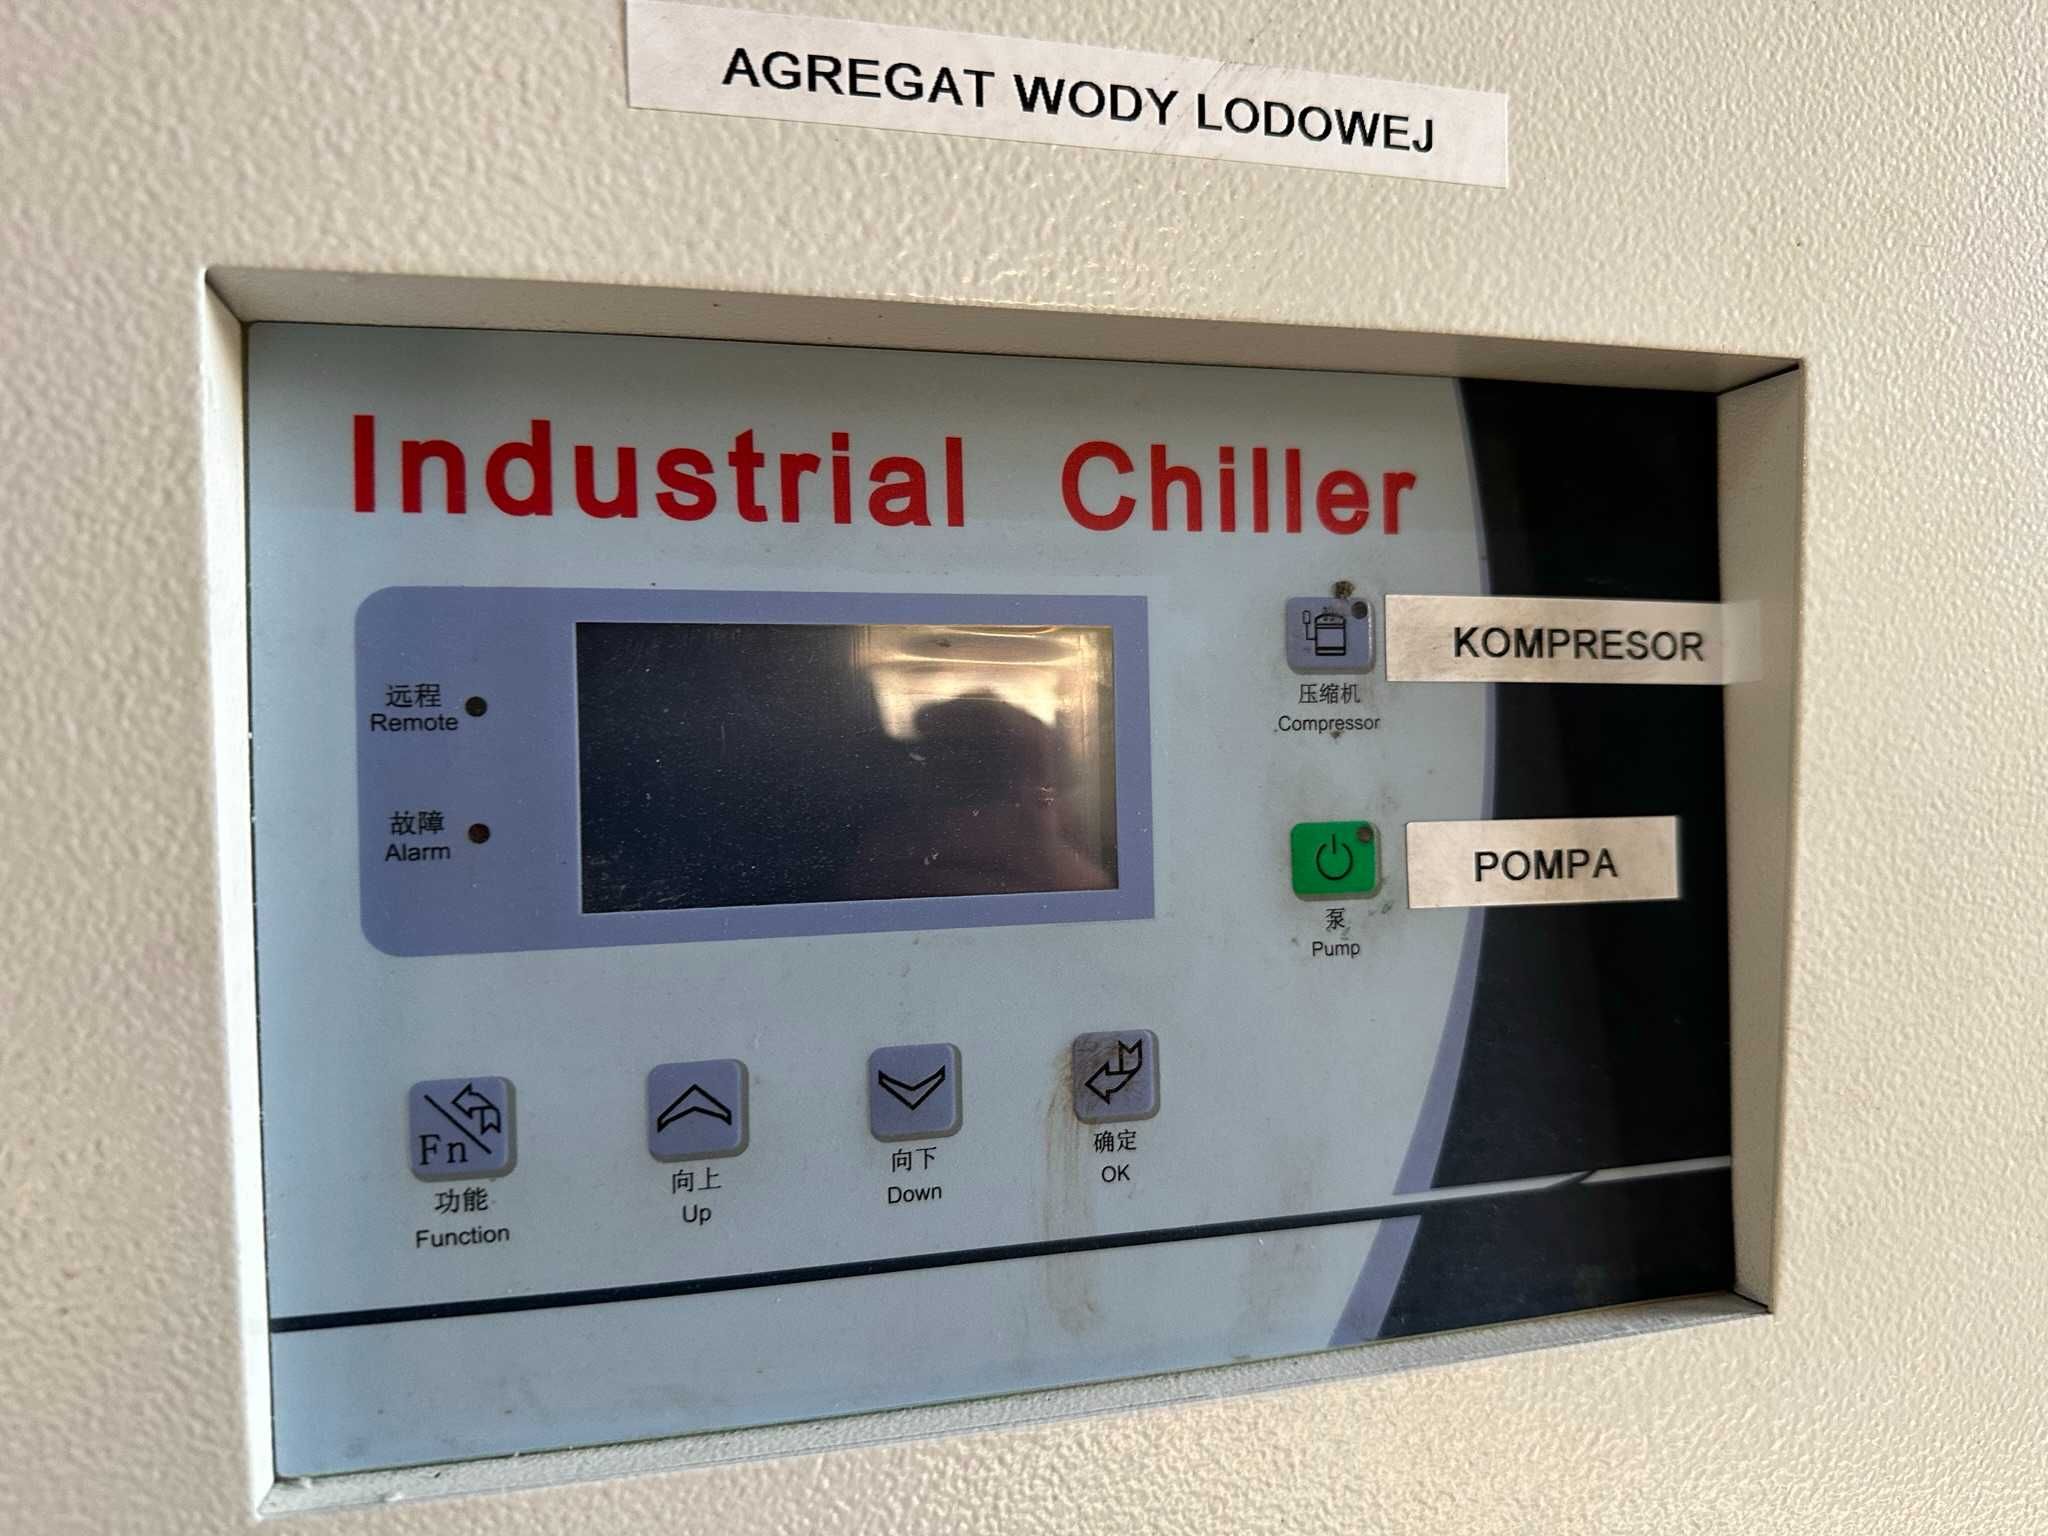 Agregat wody lodowej Industrial chiller WR-10AC o wydajności 30 kW